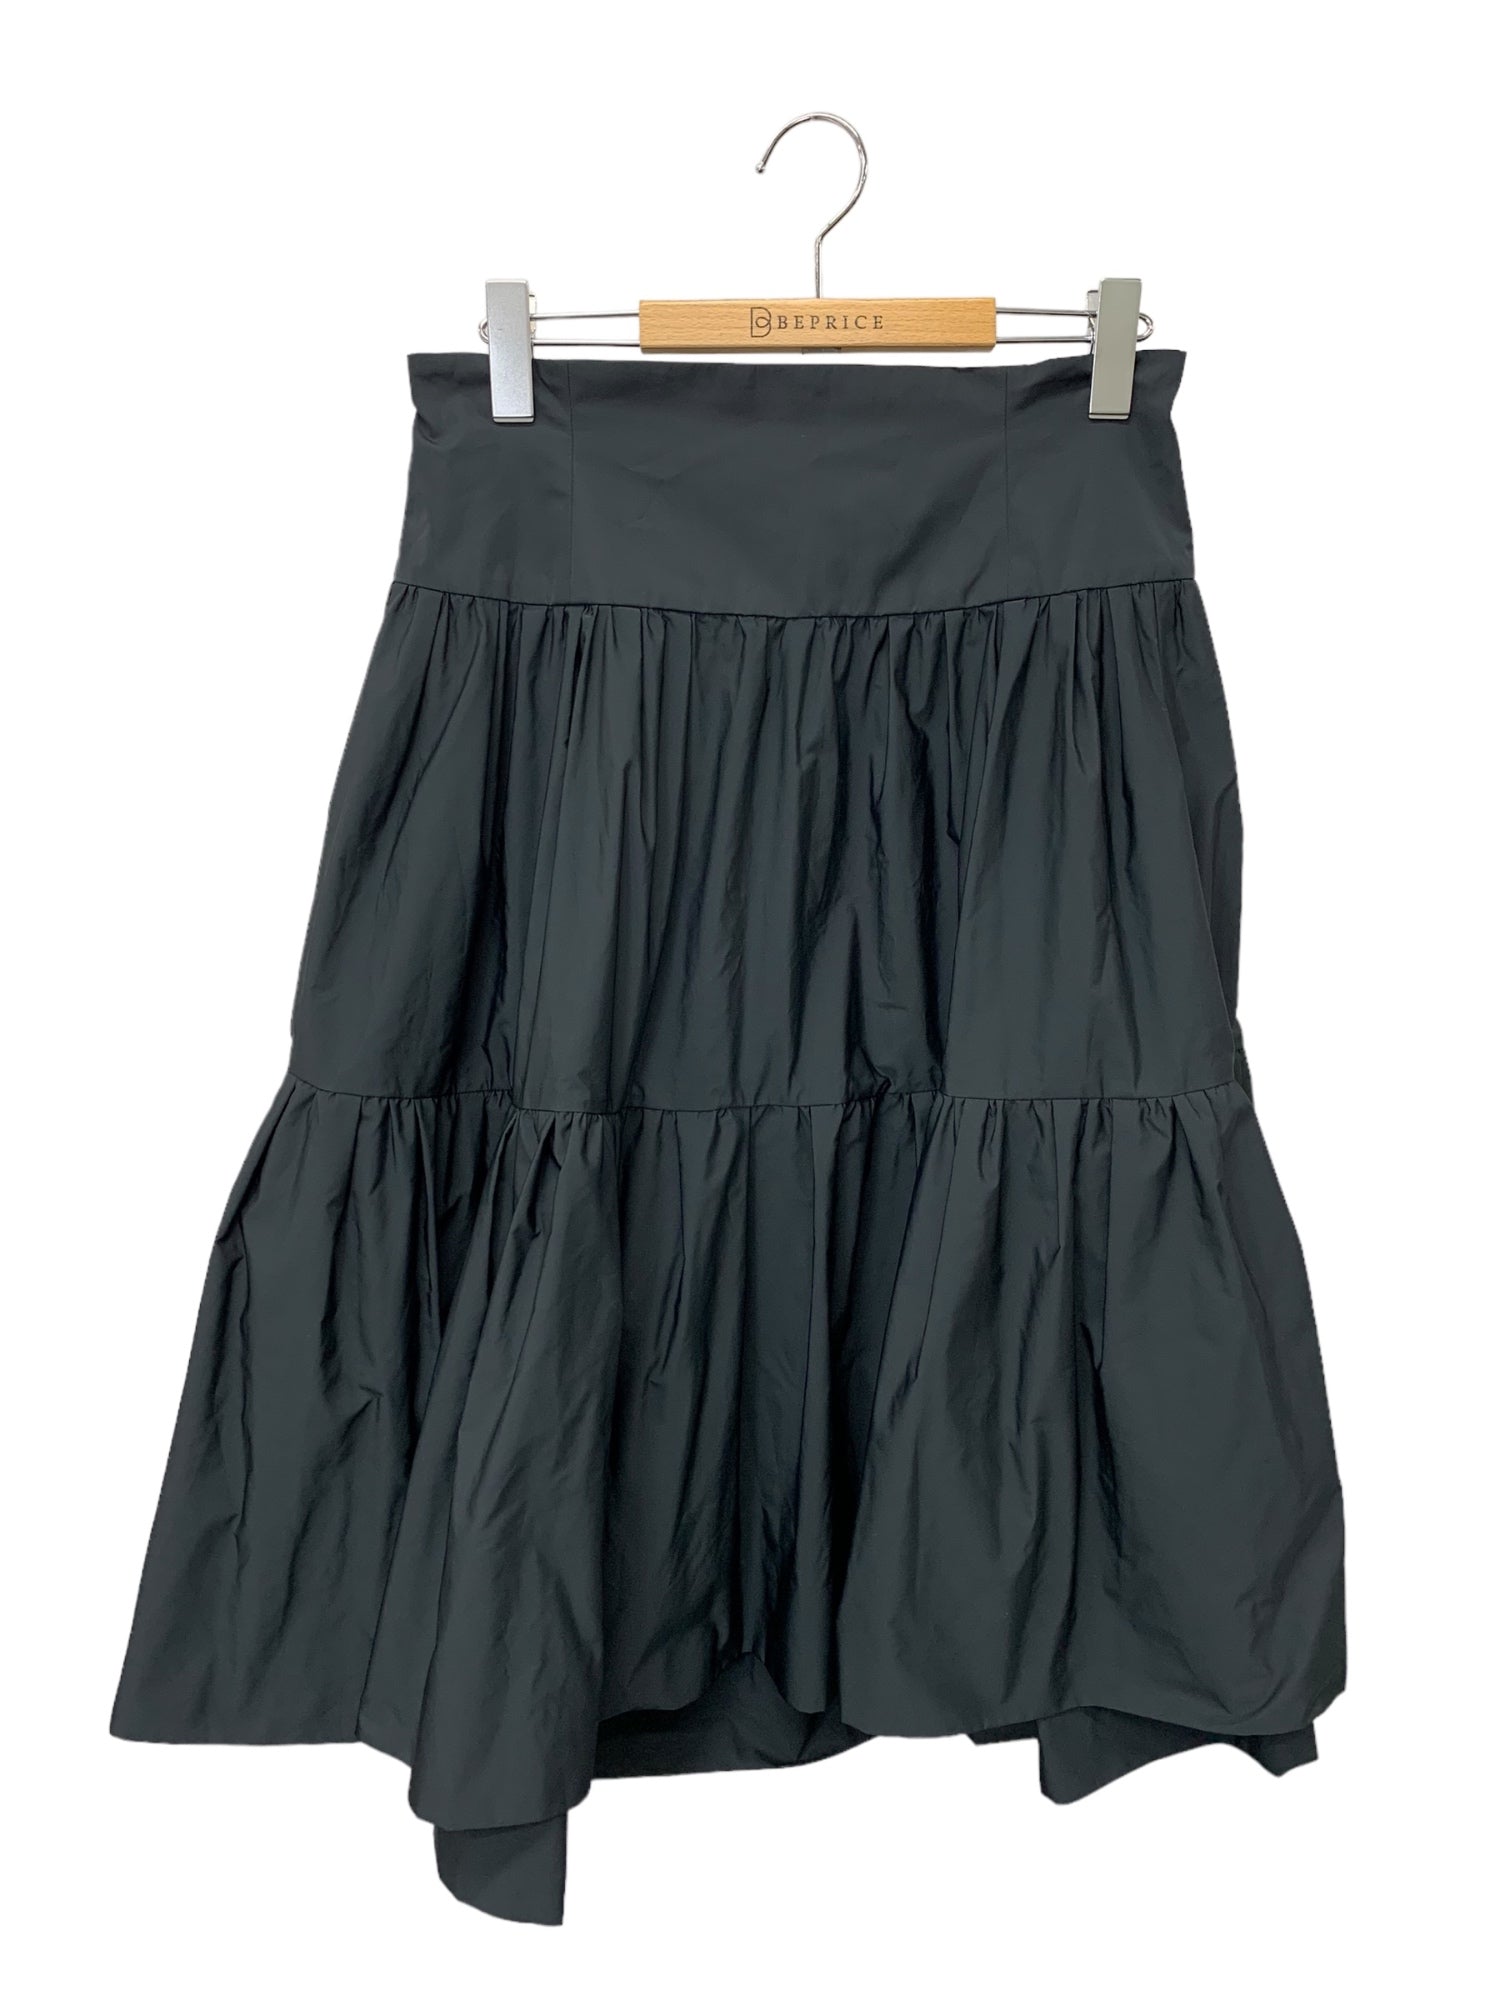 超激安在庫デイジーリン スカート Tuxedo Skirt 42 Mサイズ